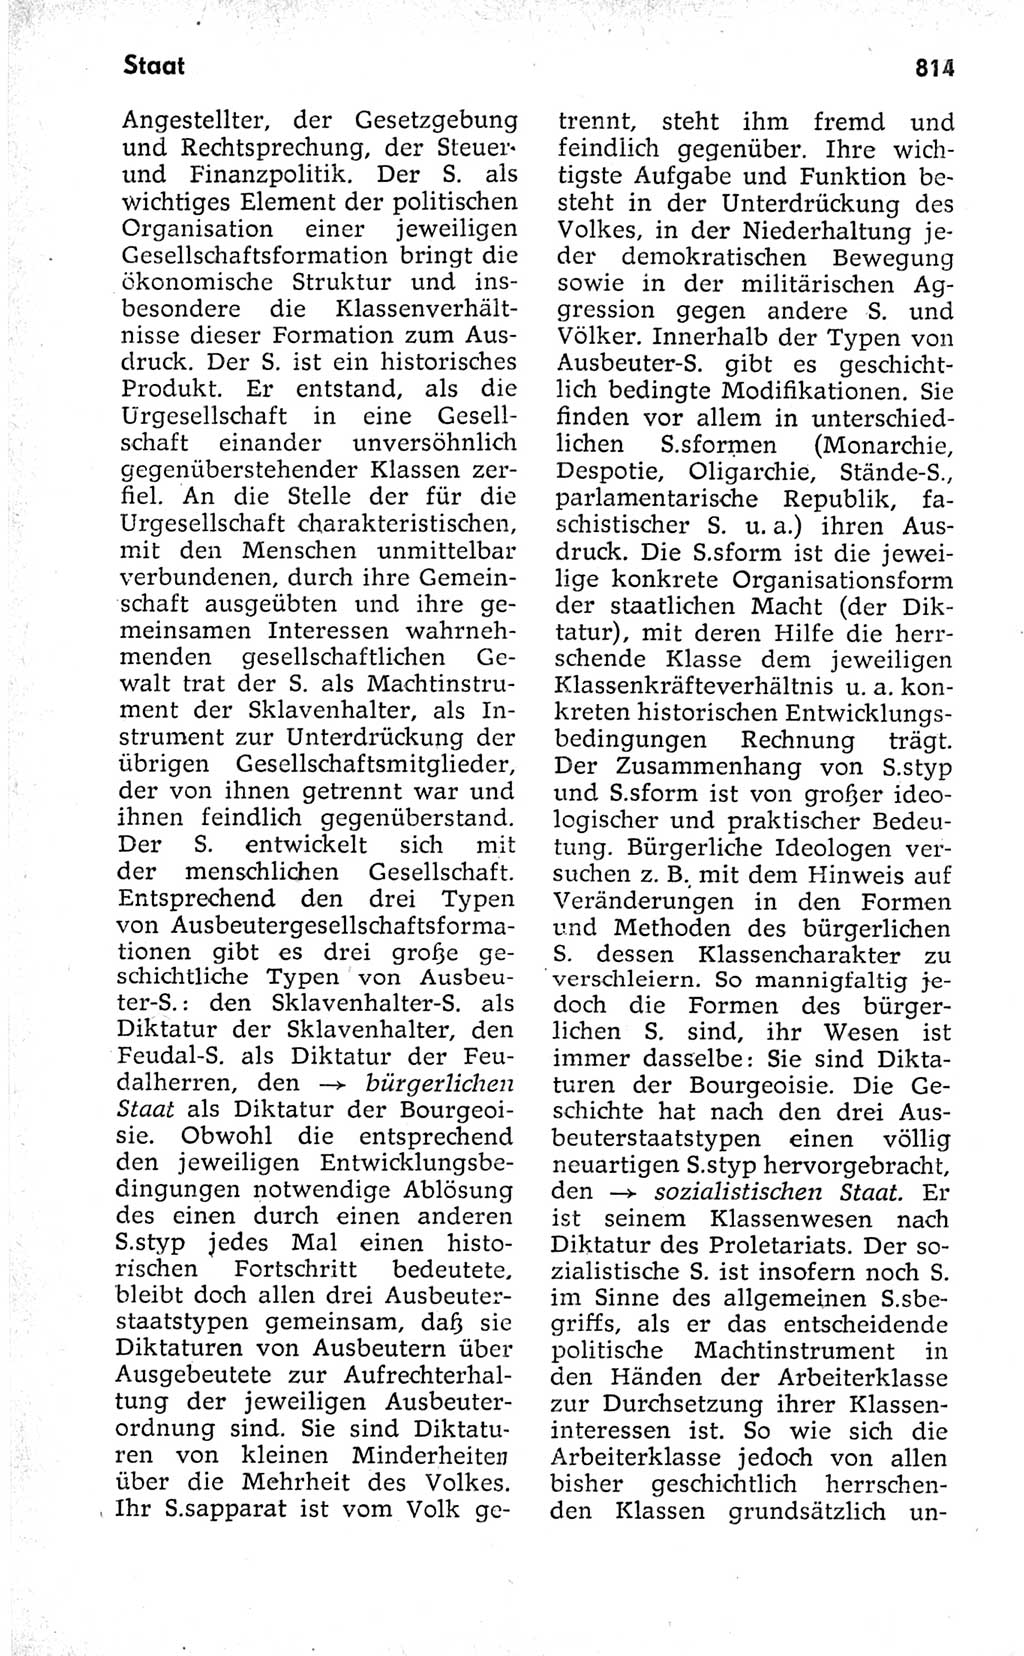 Kleines politisches Wörterbuch [Deutsche Demokratische Republik (DDR)] 1973, Seite 814 (Kl. pol. Wb. DDR 1973, S. 814)